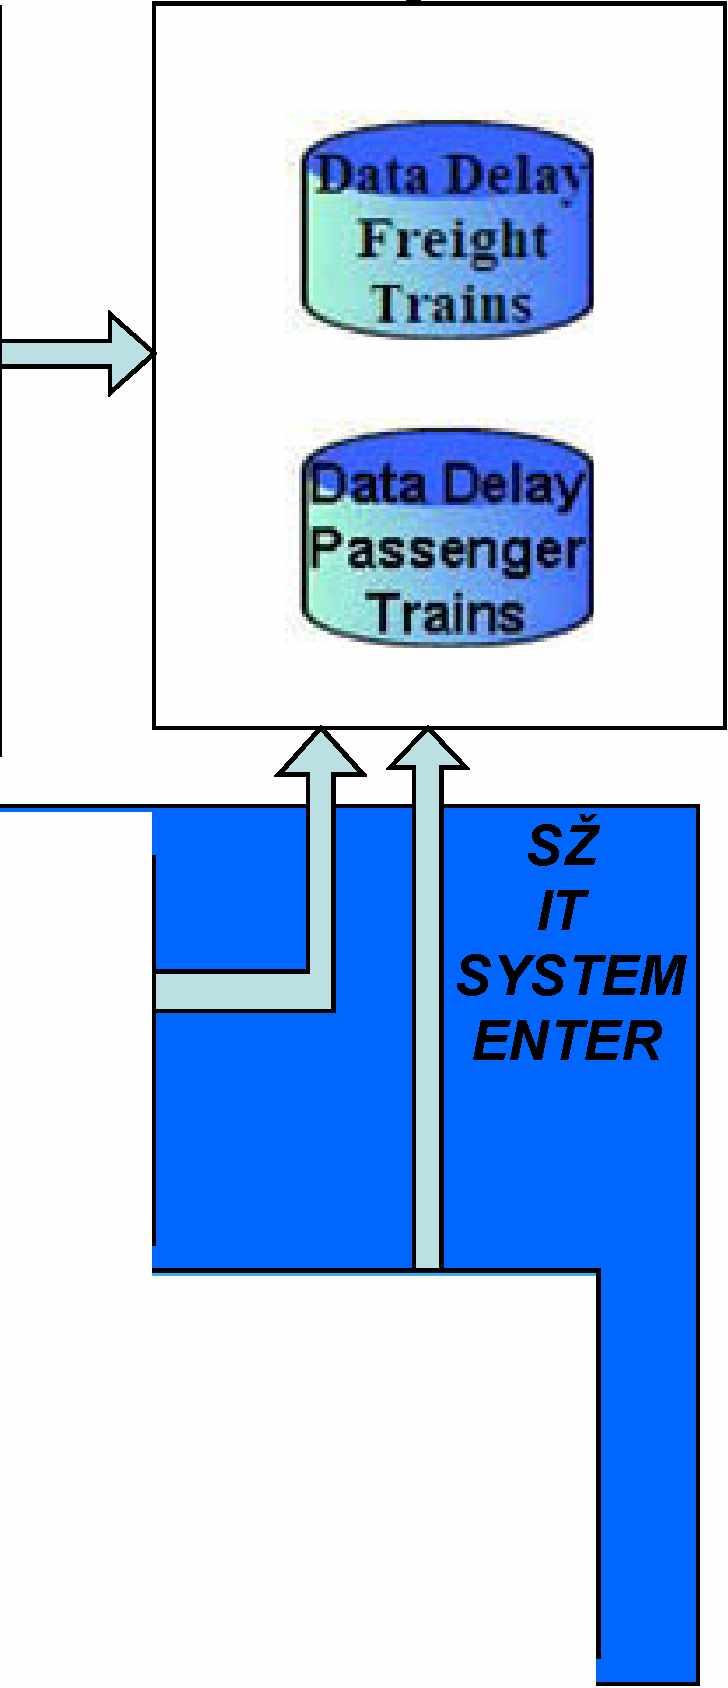 SZ:n suorituskyvyn hallinta- ja laatutarkkailujärjestelmän rakenne.